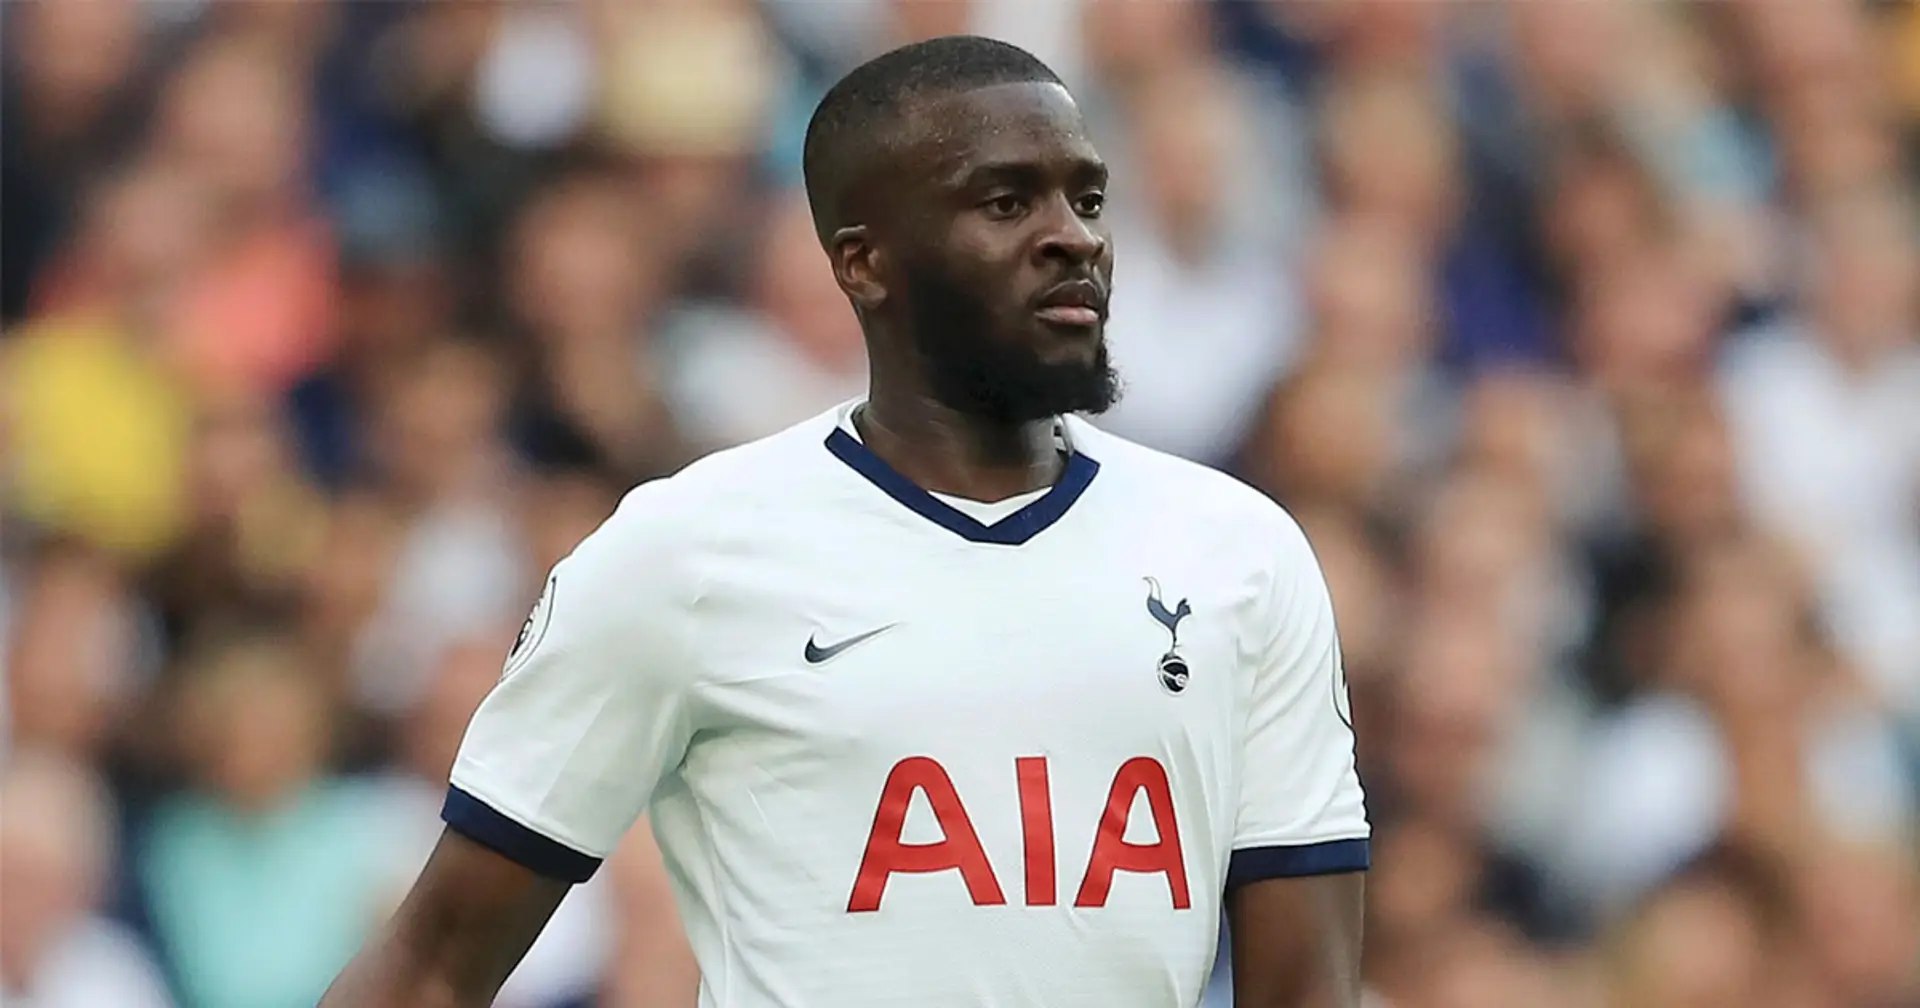 Le 10 Sport assure que Ndombele ne quittera pas Tottenham cet été